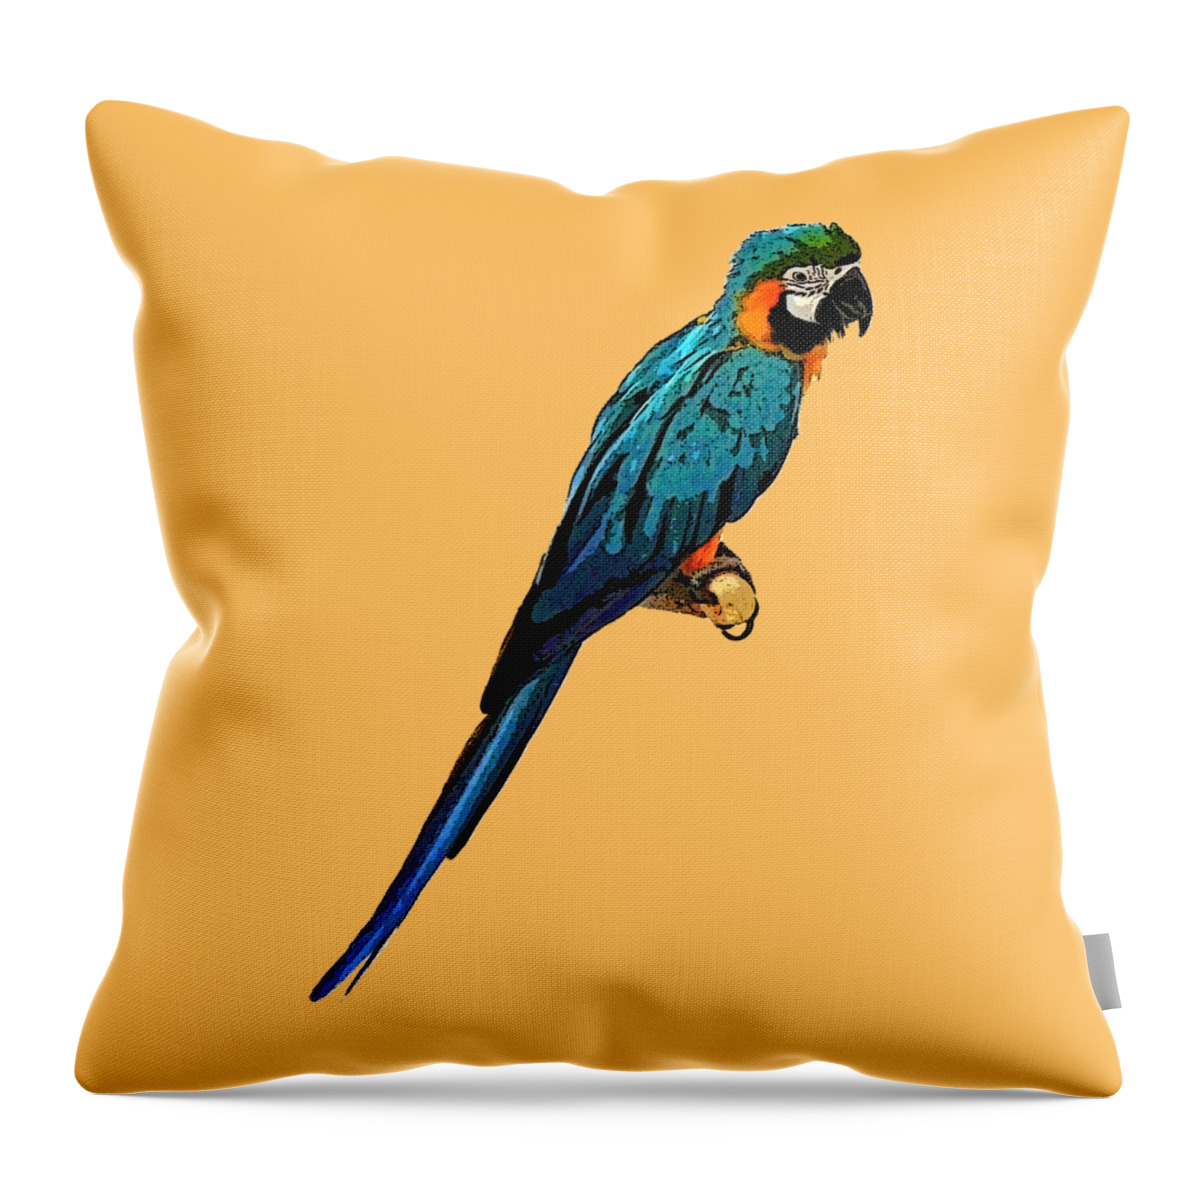 Digital Art Throw Pillow featuring the digital art Blue Parrot Art by Francesca Mackenney